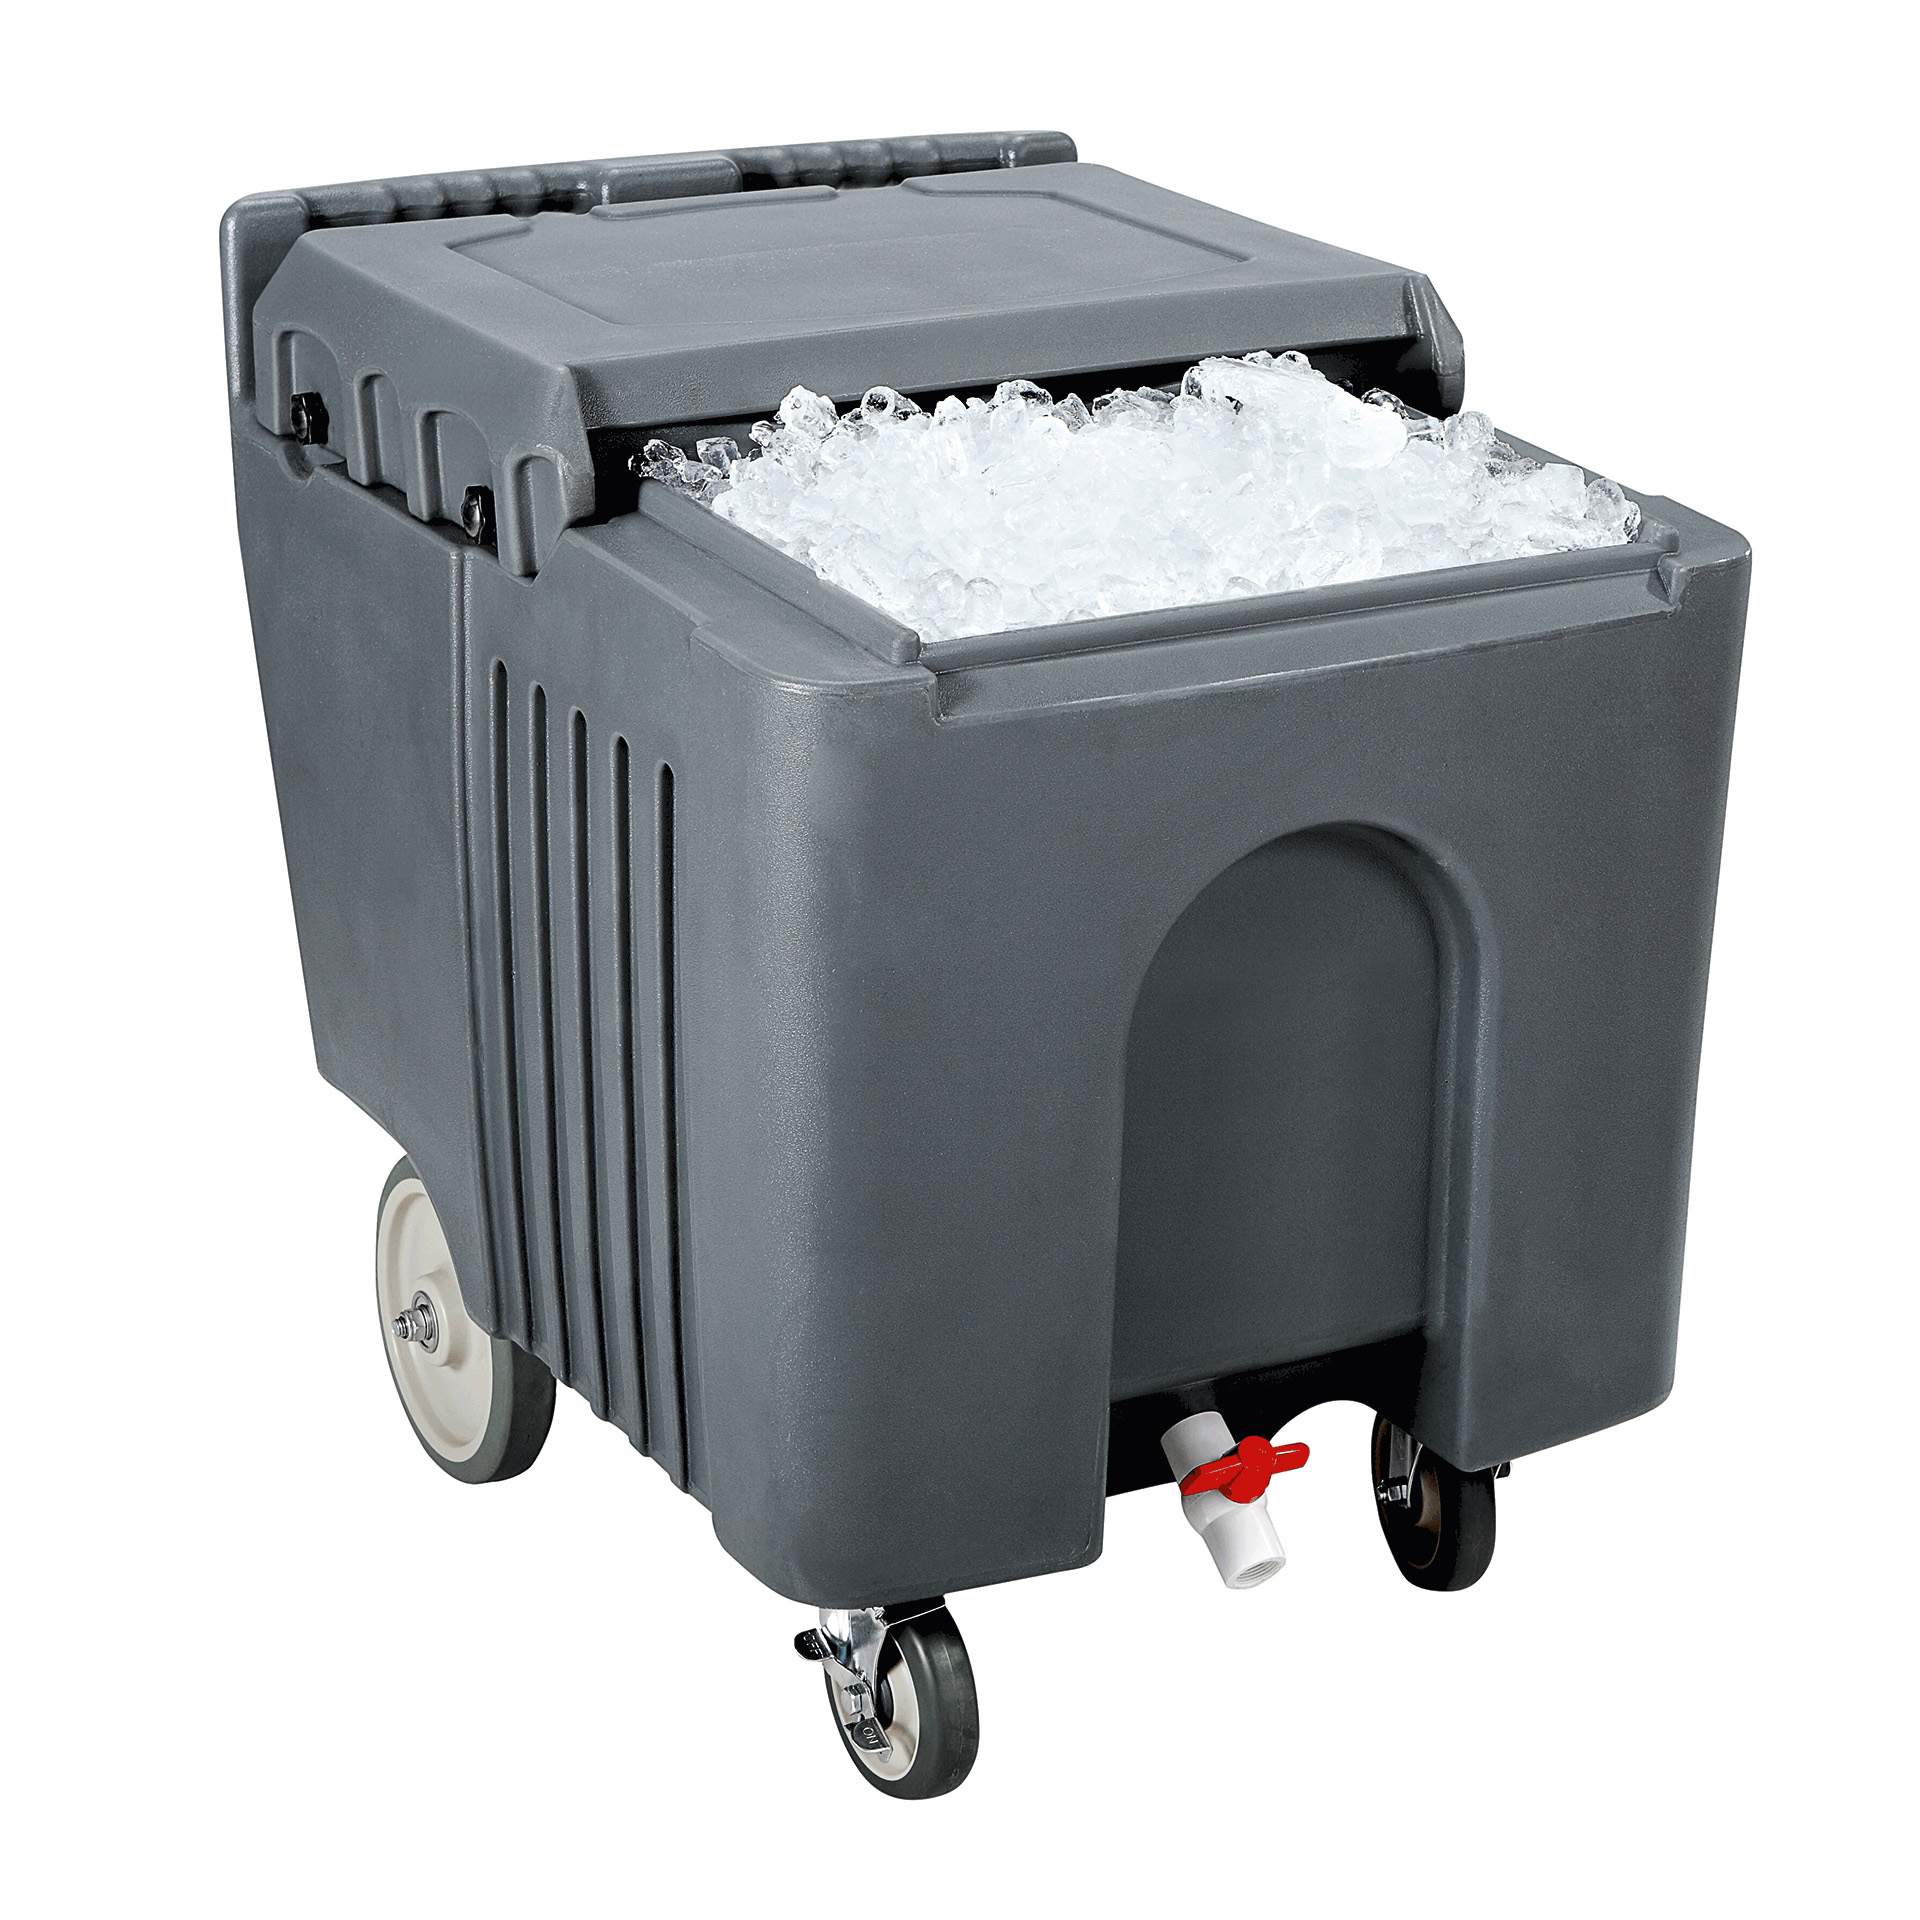 Ice-Caddy - mit Auslaufhahn - Abm. 79 x 60 x 74 cm - Inhalt 110 l - Kunststoff